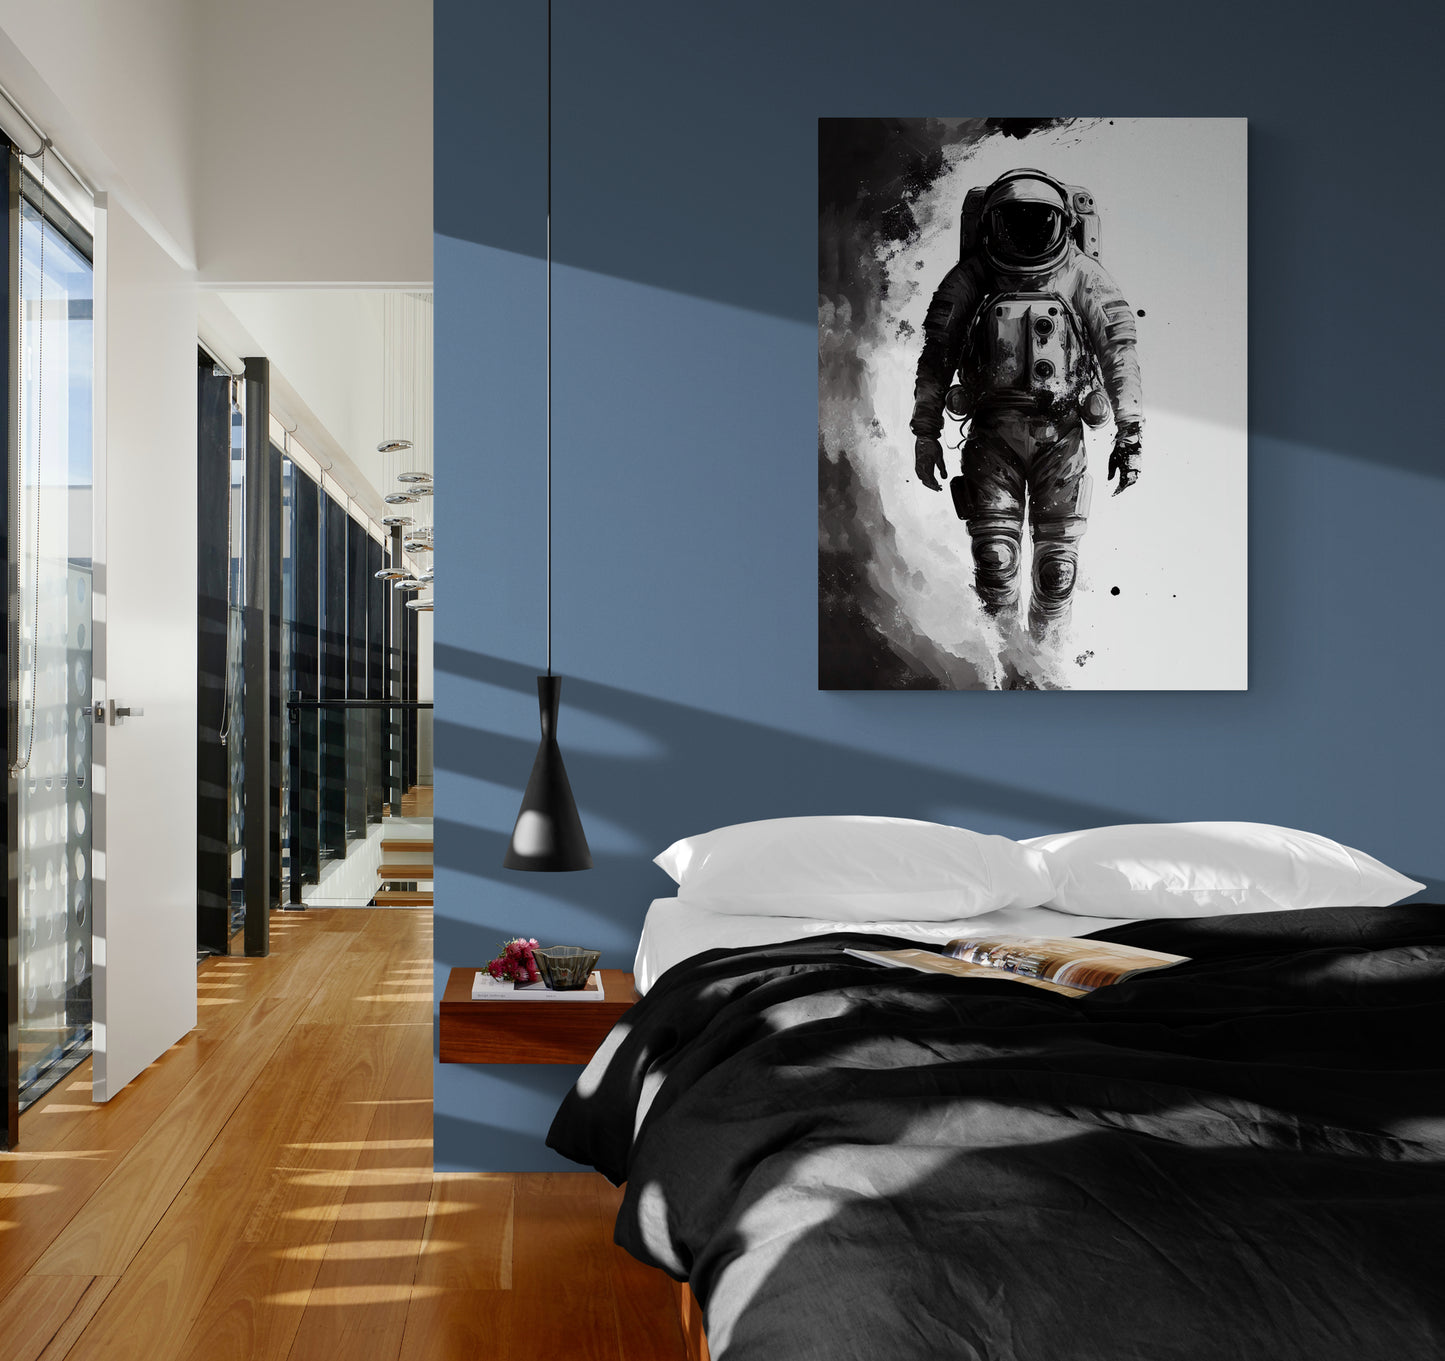 Décoration intérieure originale, contraste noir et blanc, illustration astronaute.